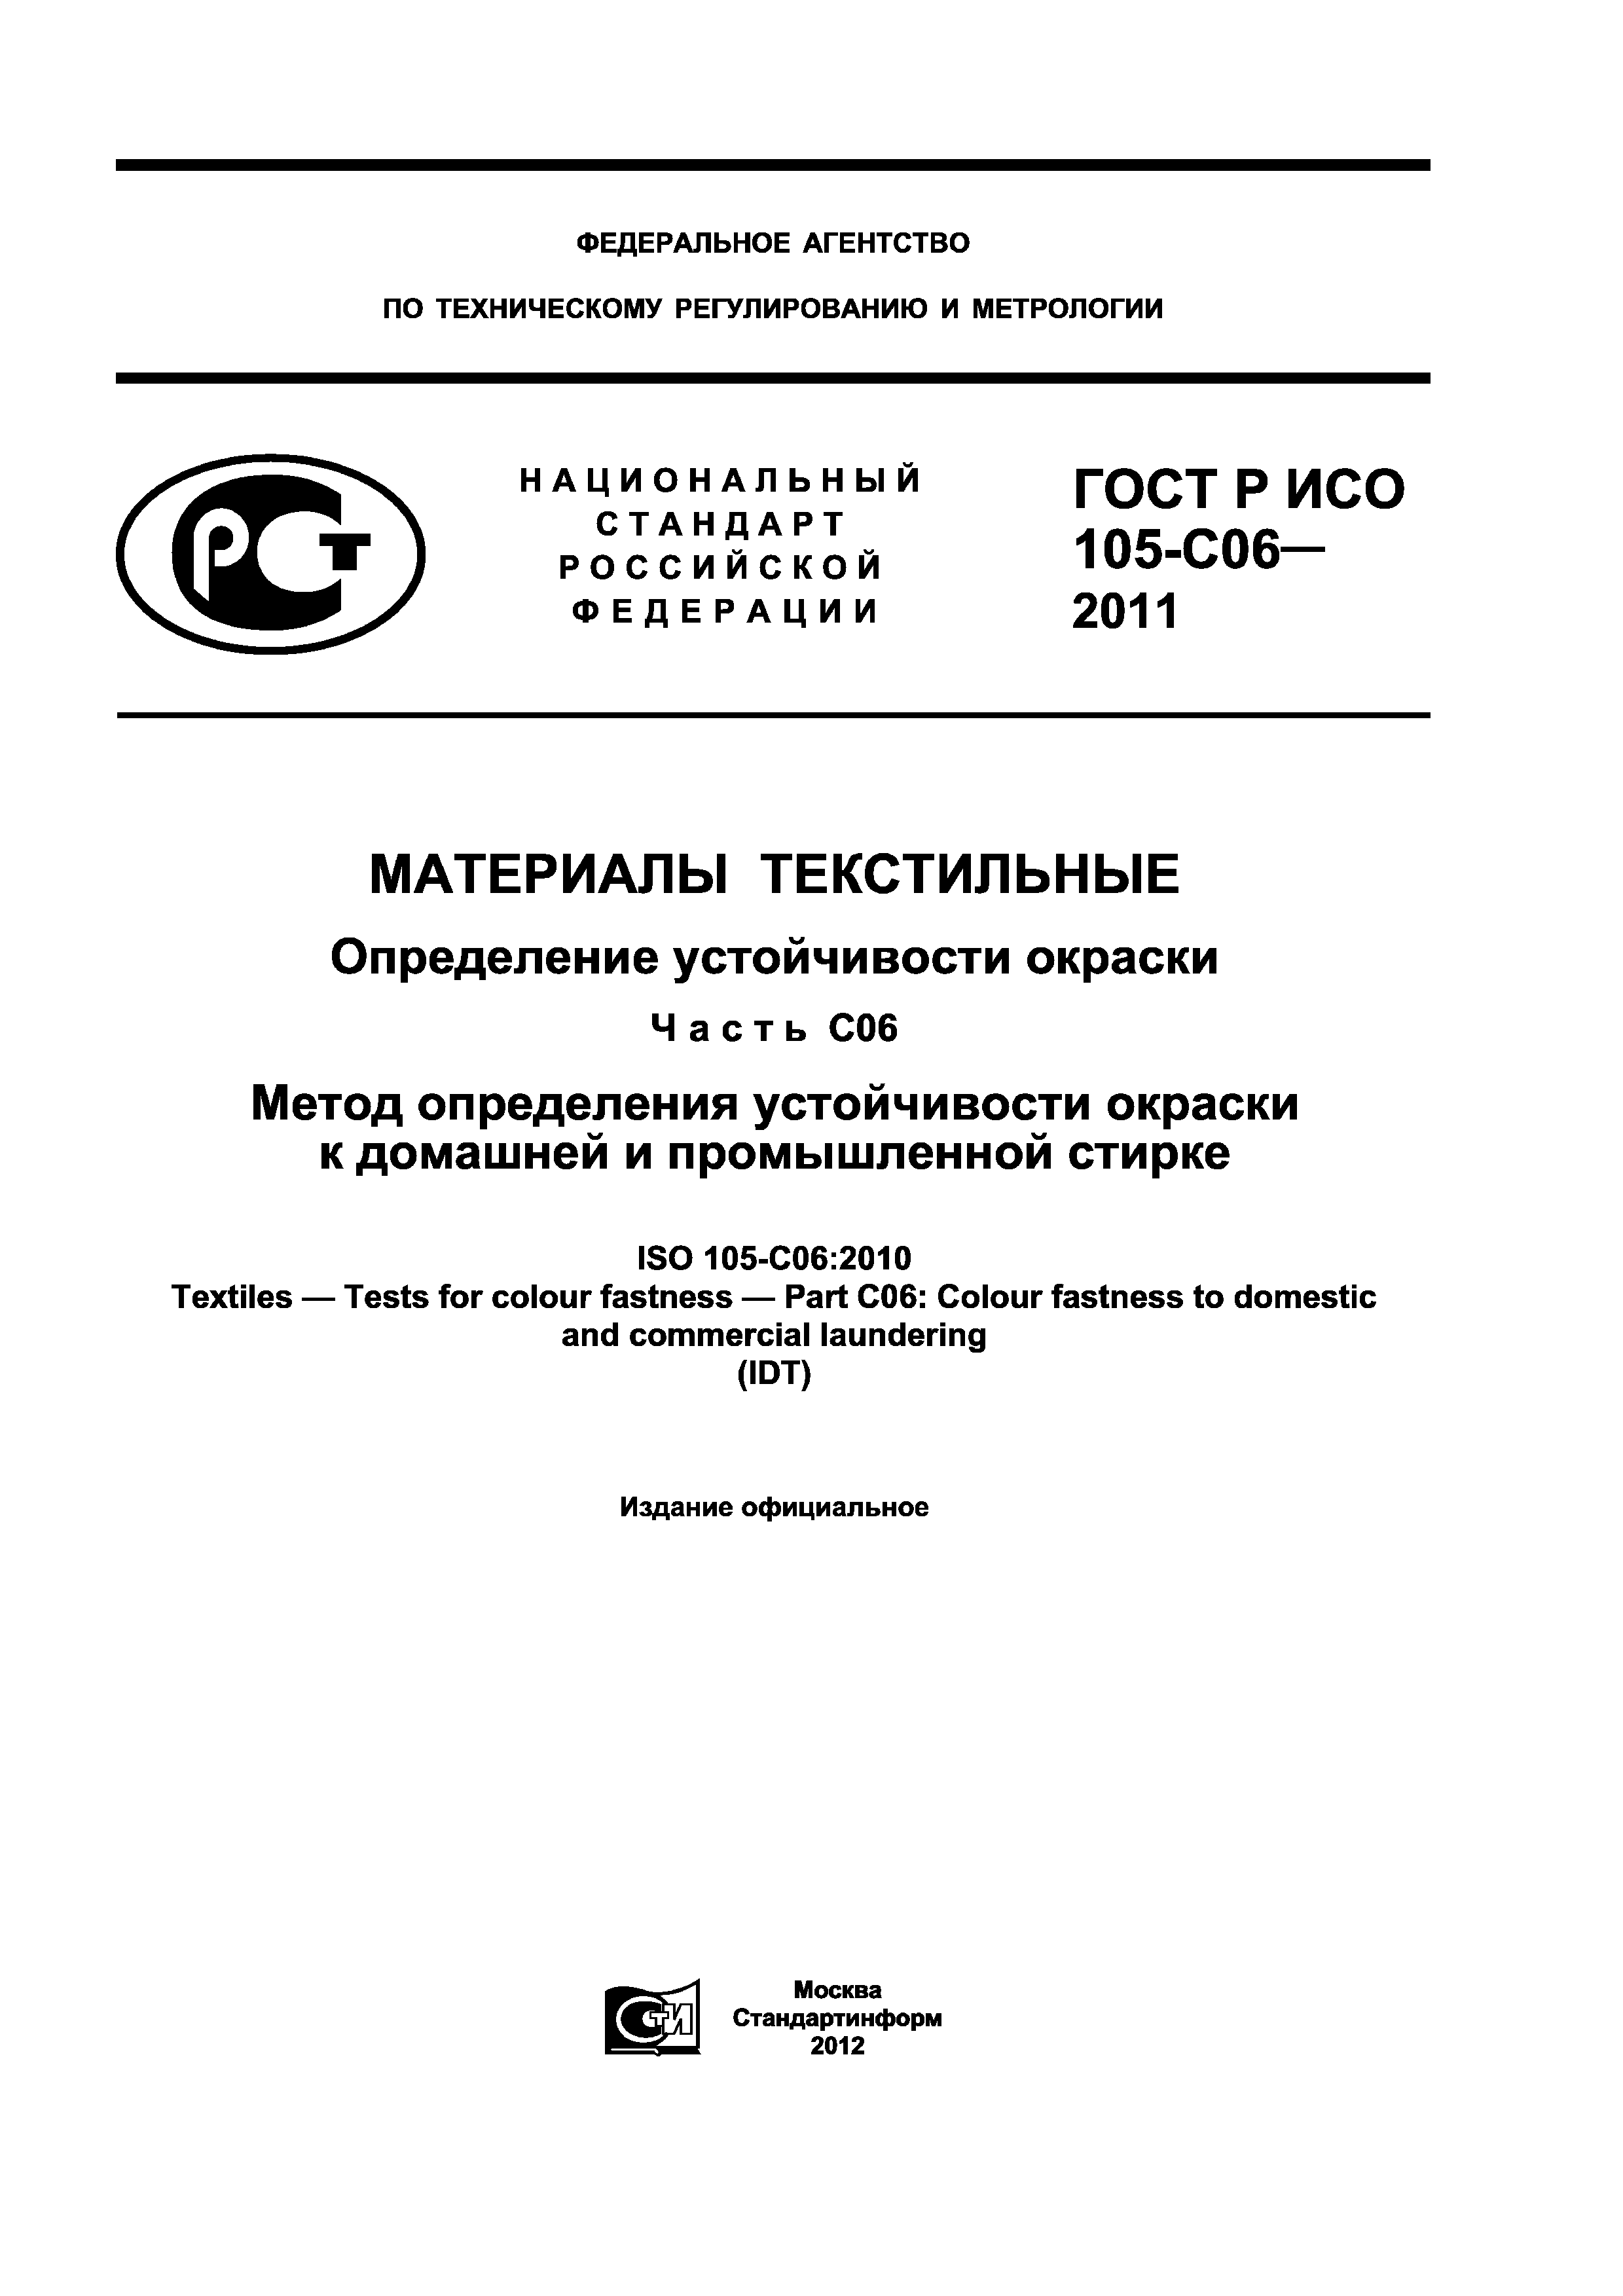 ГОСТ Р ИСО 105-C06-2011